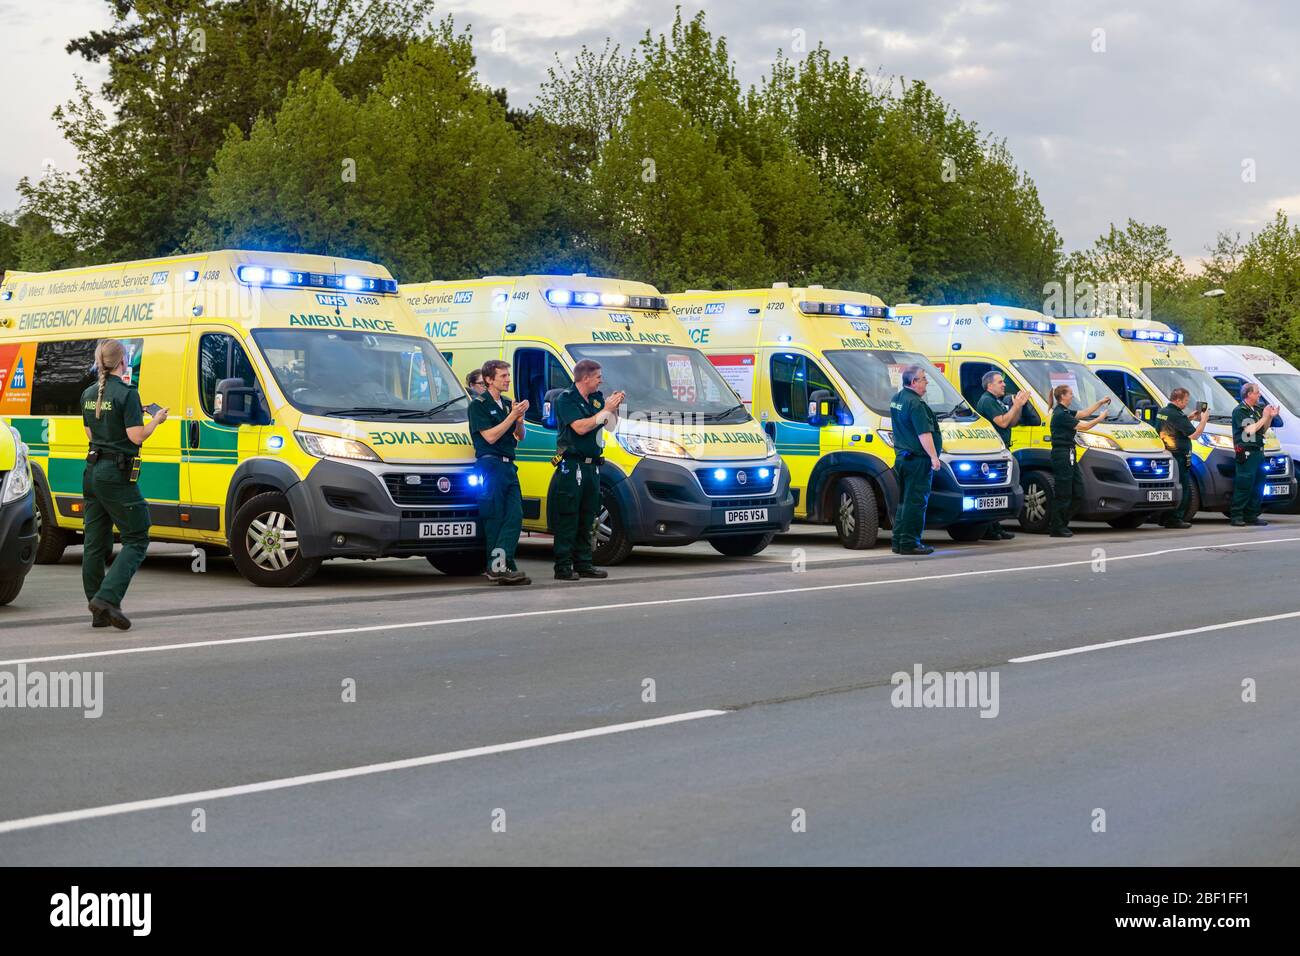 Am Donnerstag um 20 Uhr klatschen wir für unsere Betreuer. Krankenwagen-Crews applaudieren den Angestellten des NHS-Krankenhauses, Großbritannien. Klatsch für Beschäftigte im Gesundheitswesen. Stockfoto